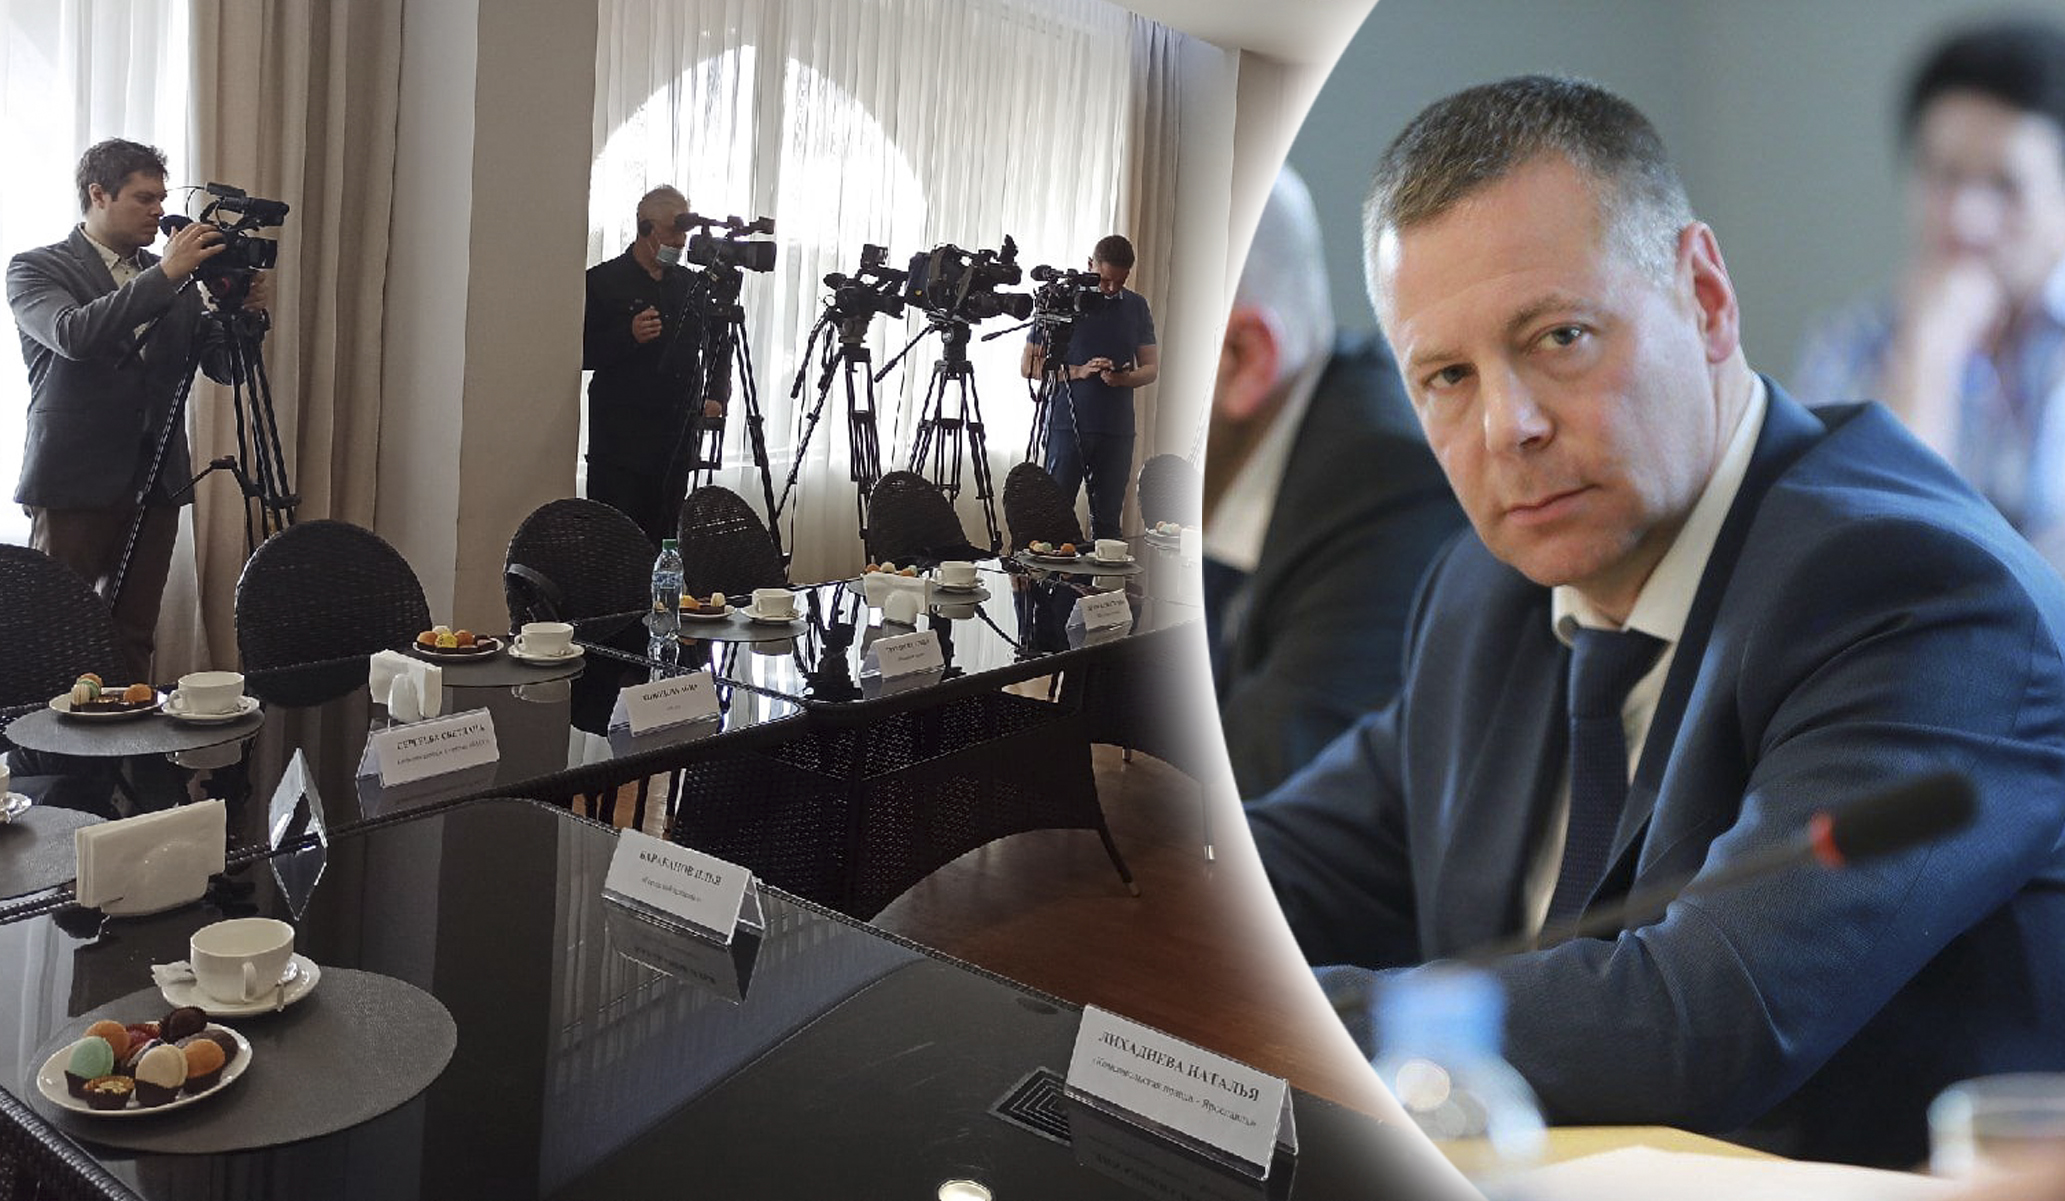 Мобилизация, автобусы, тарифы в Ярославле: трансляция пресс-конференции Евраева